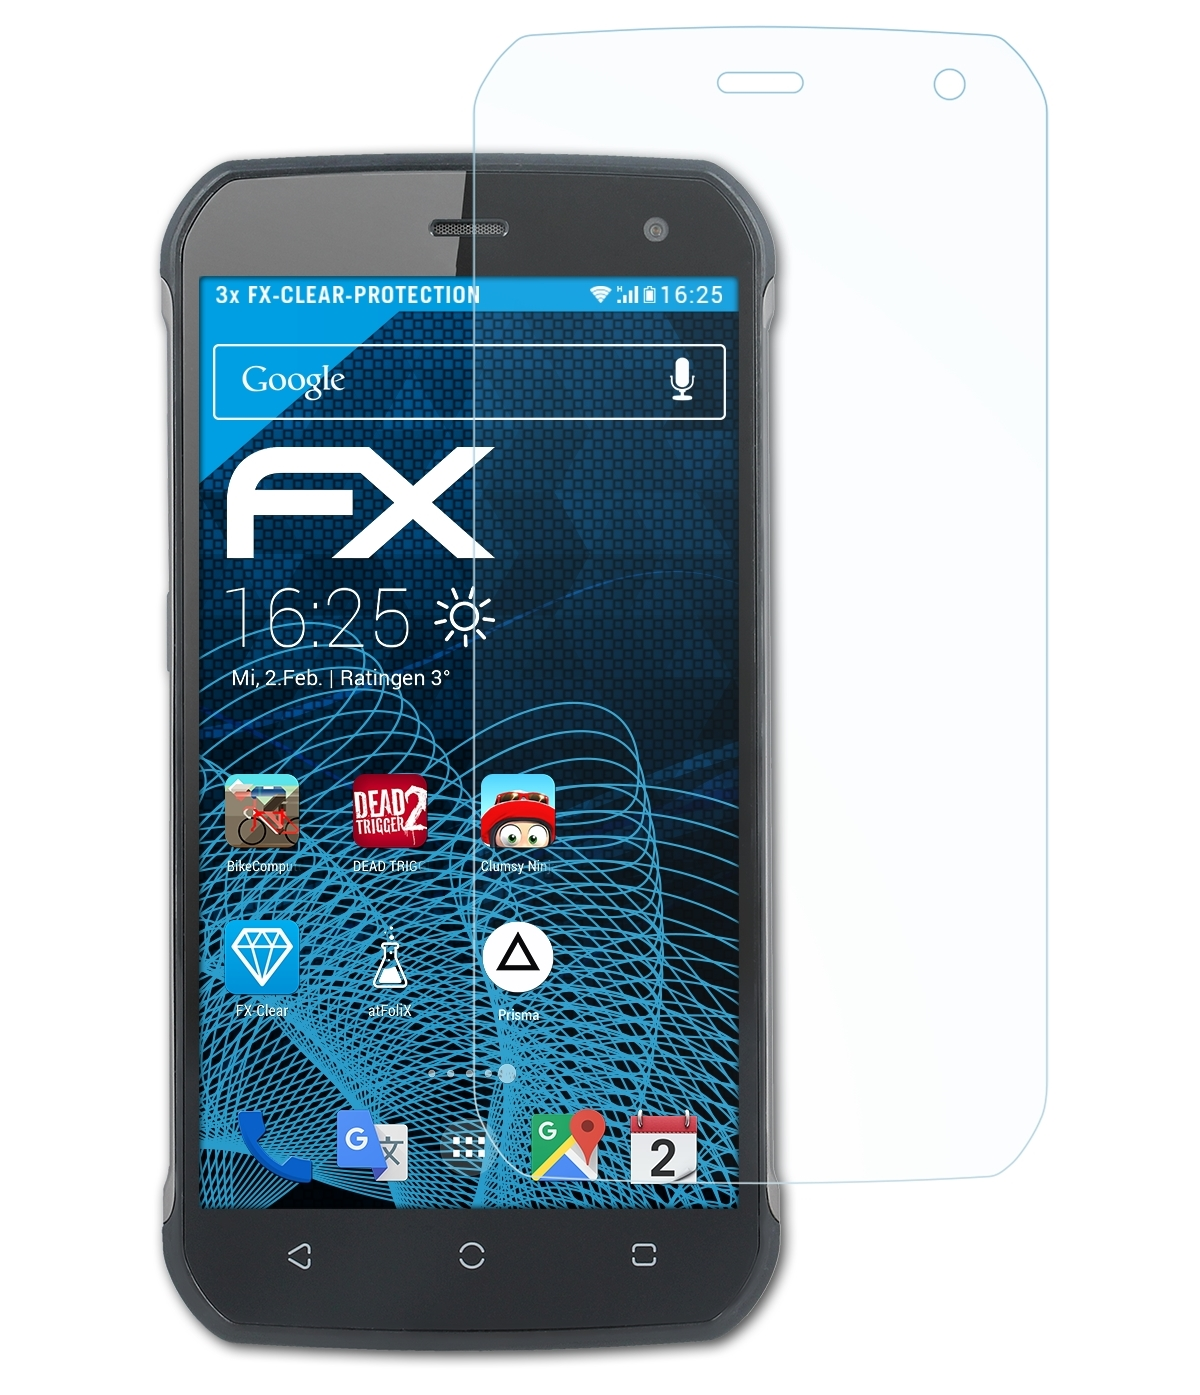 ATFOLIX 3x FX-Clear Displayschutz(für Hammer Blade) myPhone